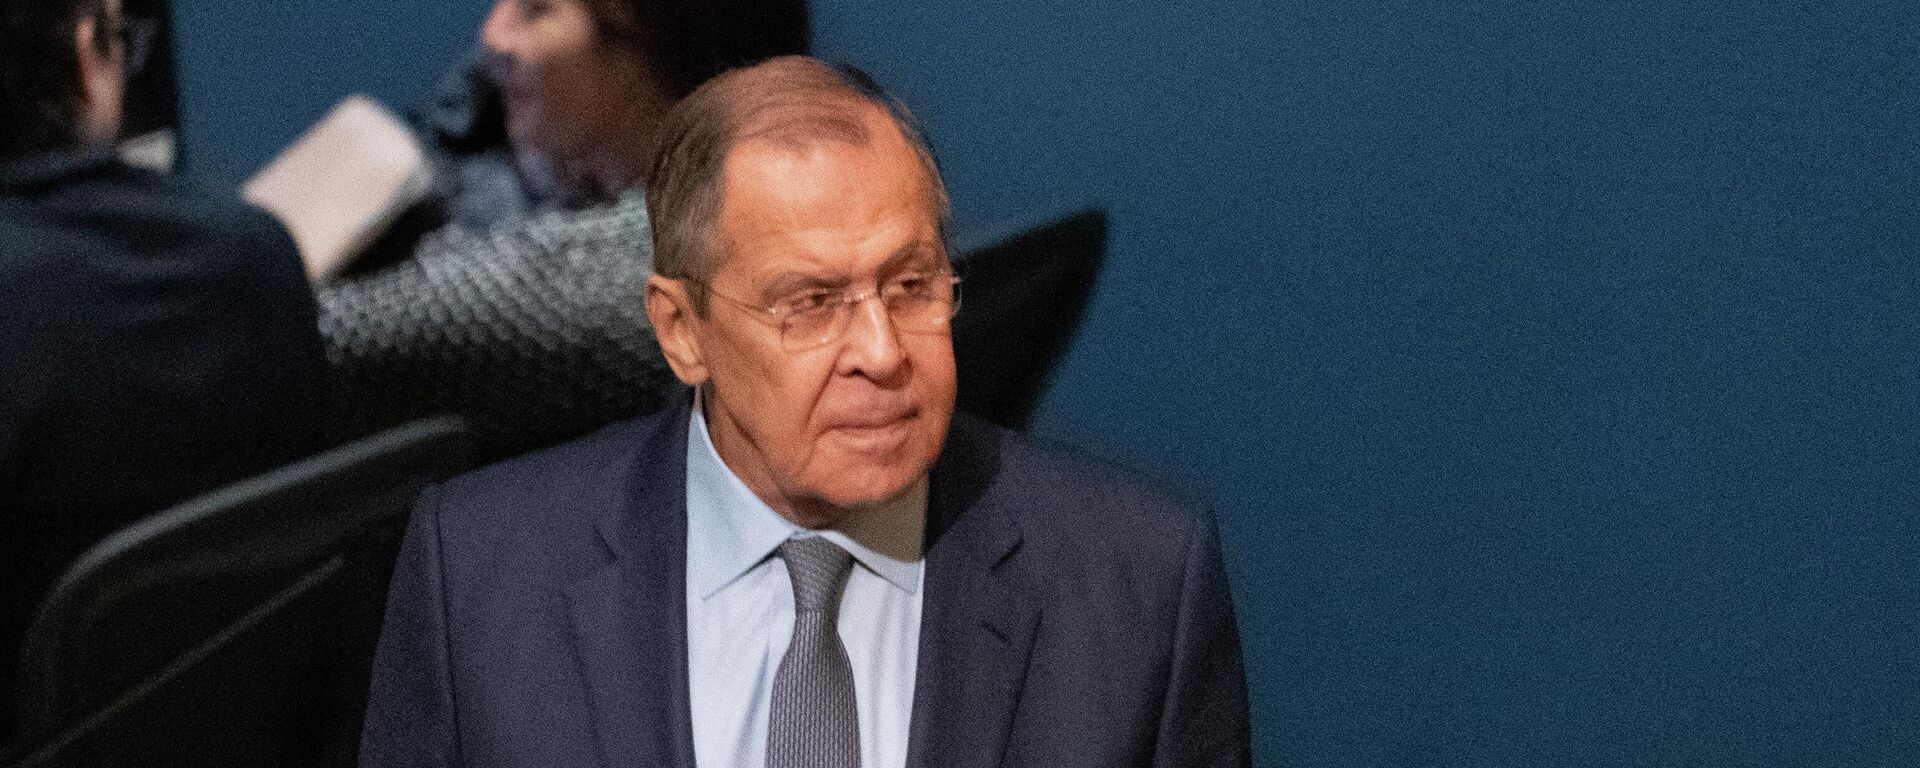 Bộ trưởng Ngoại giao Nga Sergei Lavrov phát biểu tại phiên họp thứ 77 của Đại hội đồng Liên hợp quốc tại Trụ sở Liên hợp quốc ở New York - Sputnik Việt Nam, 1920, 25.09.2022